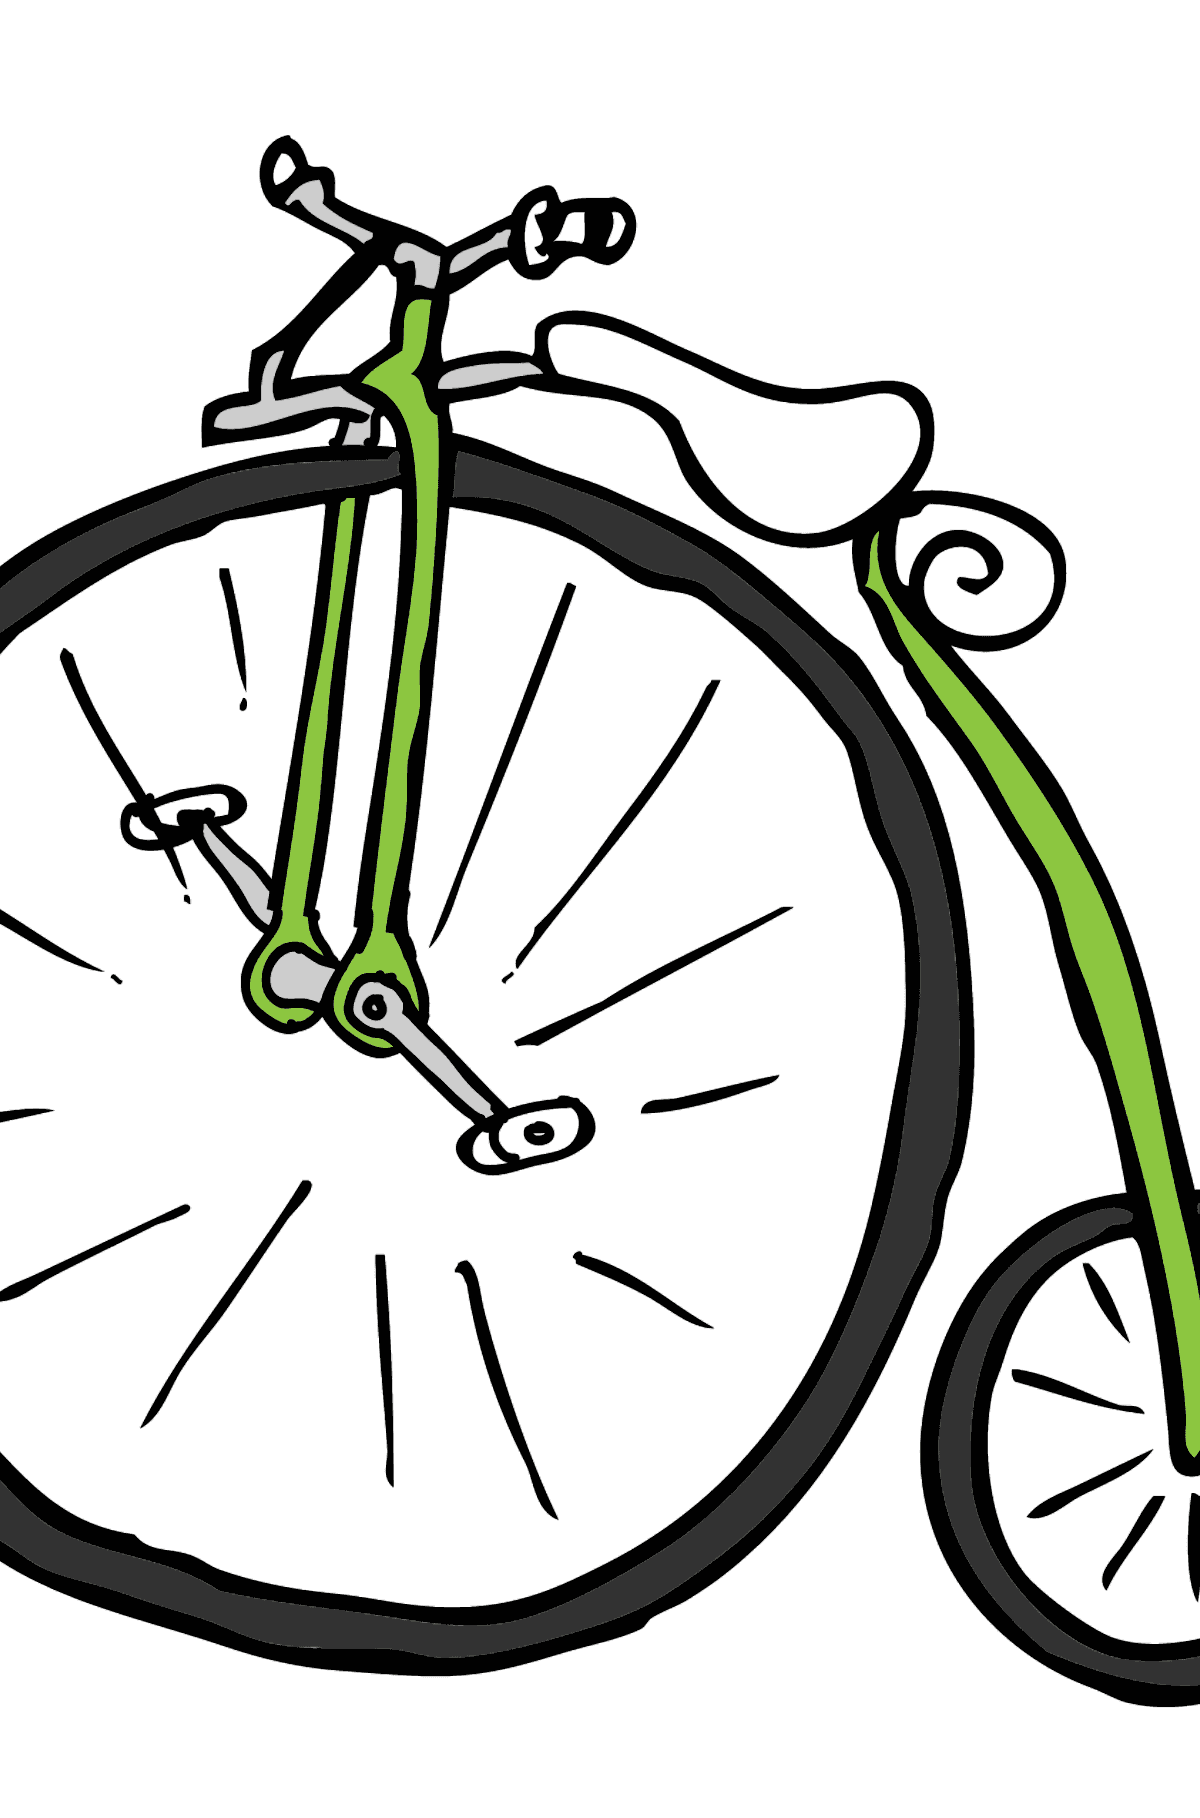 Tegning til fargelegging sykkel enhjuling - Tegninger til fargelegging for barn